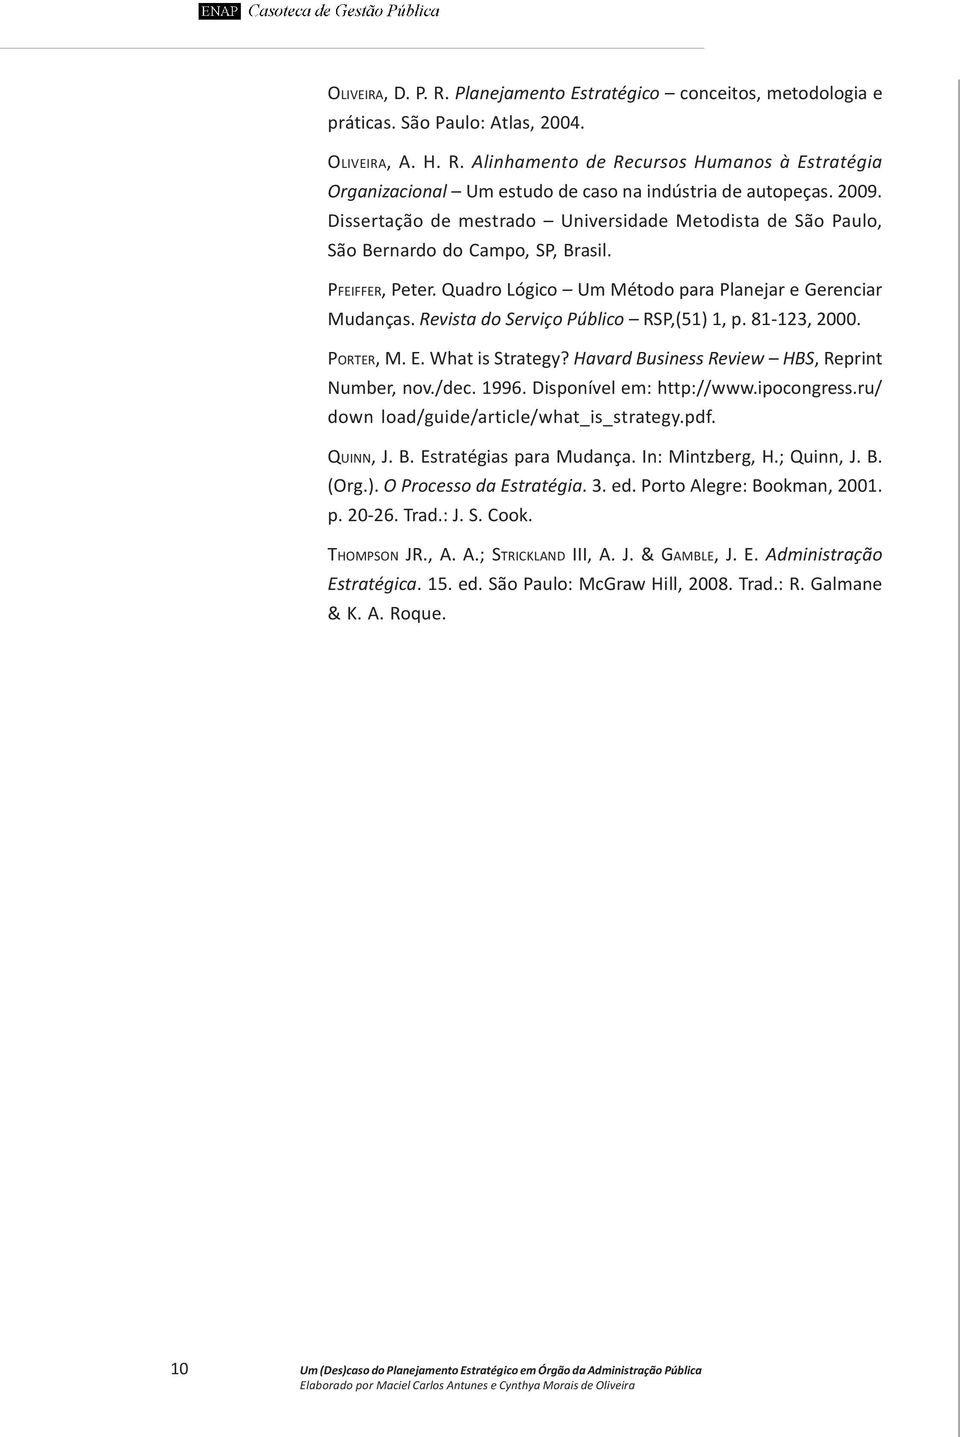 Revista do Serviço Público RSP,(51) 1, p. 81-123, 2000. PORTER, M. E. What is Strategy? Havard Business Review HBS, Reprint Number, nov./dec. 1996. Disponível em: http://www.ipocongress.